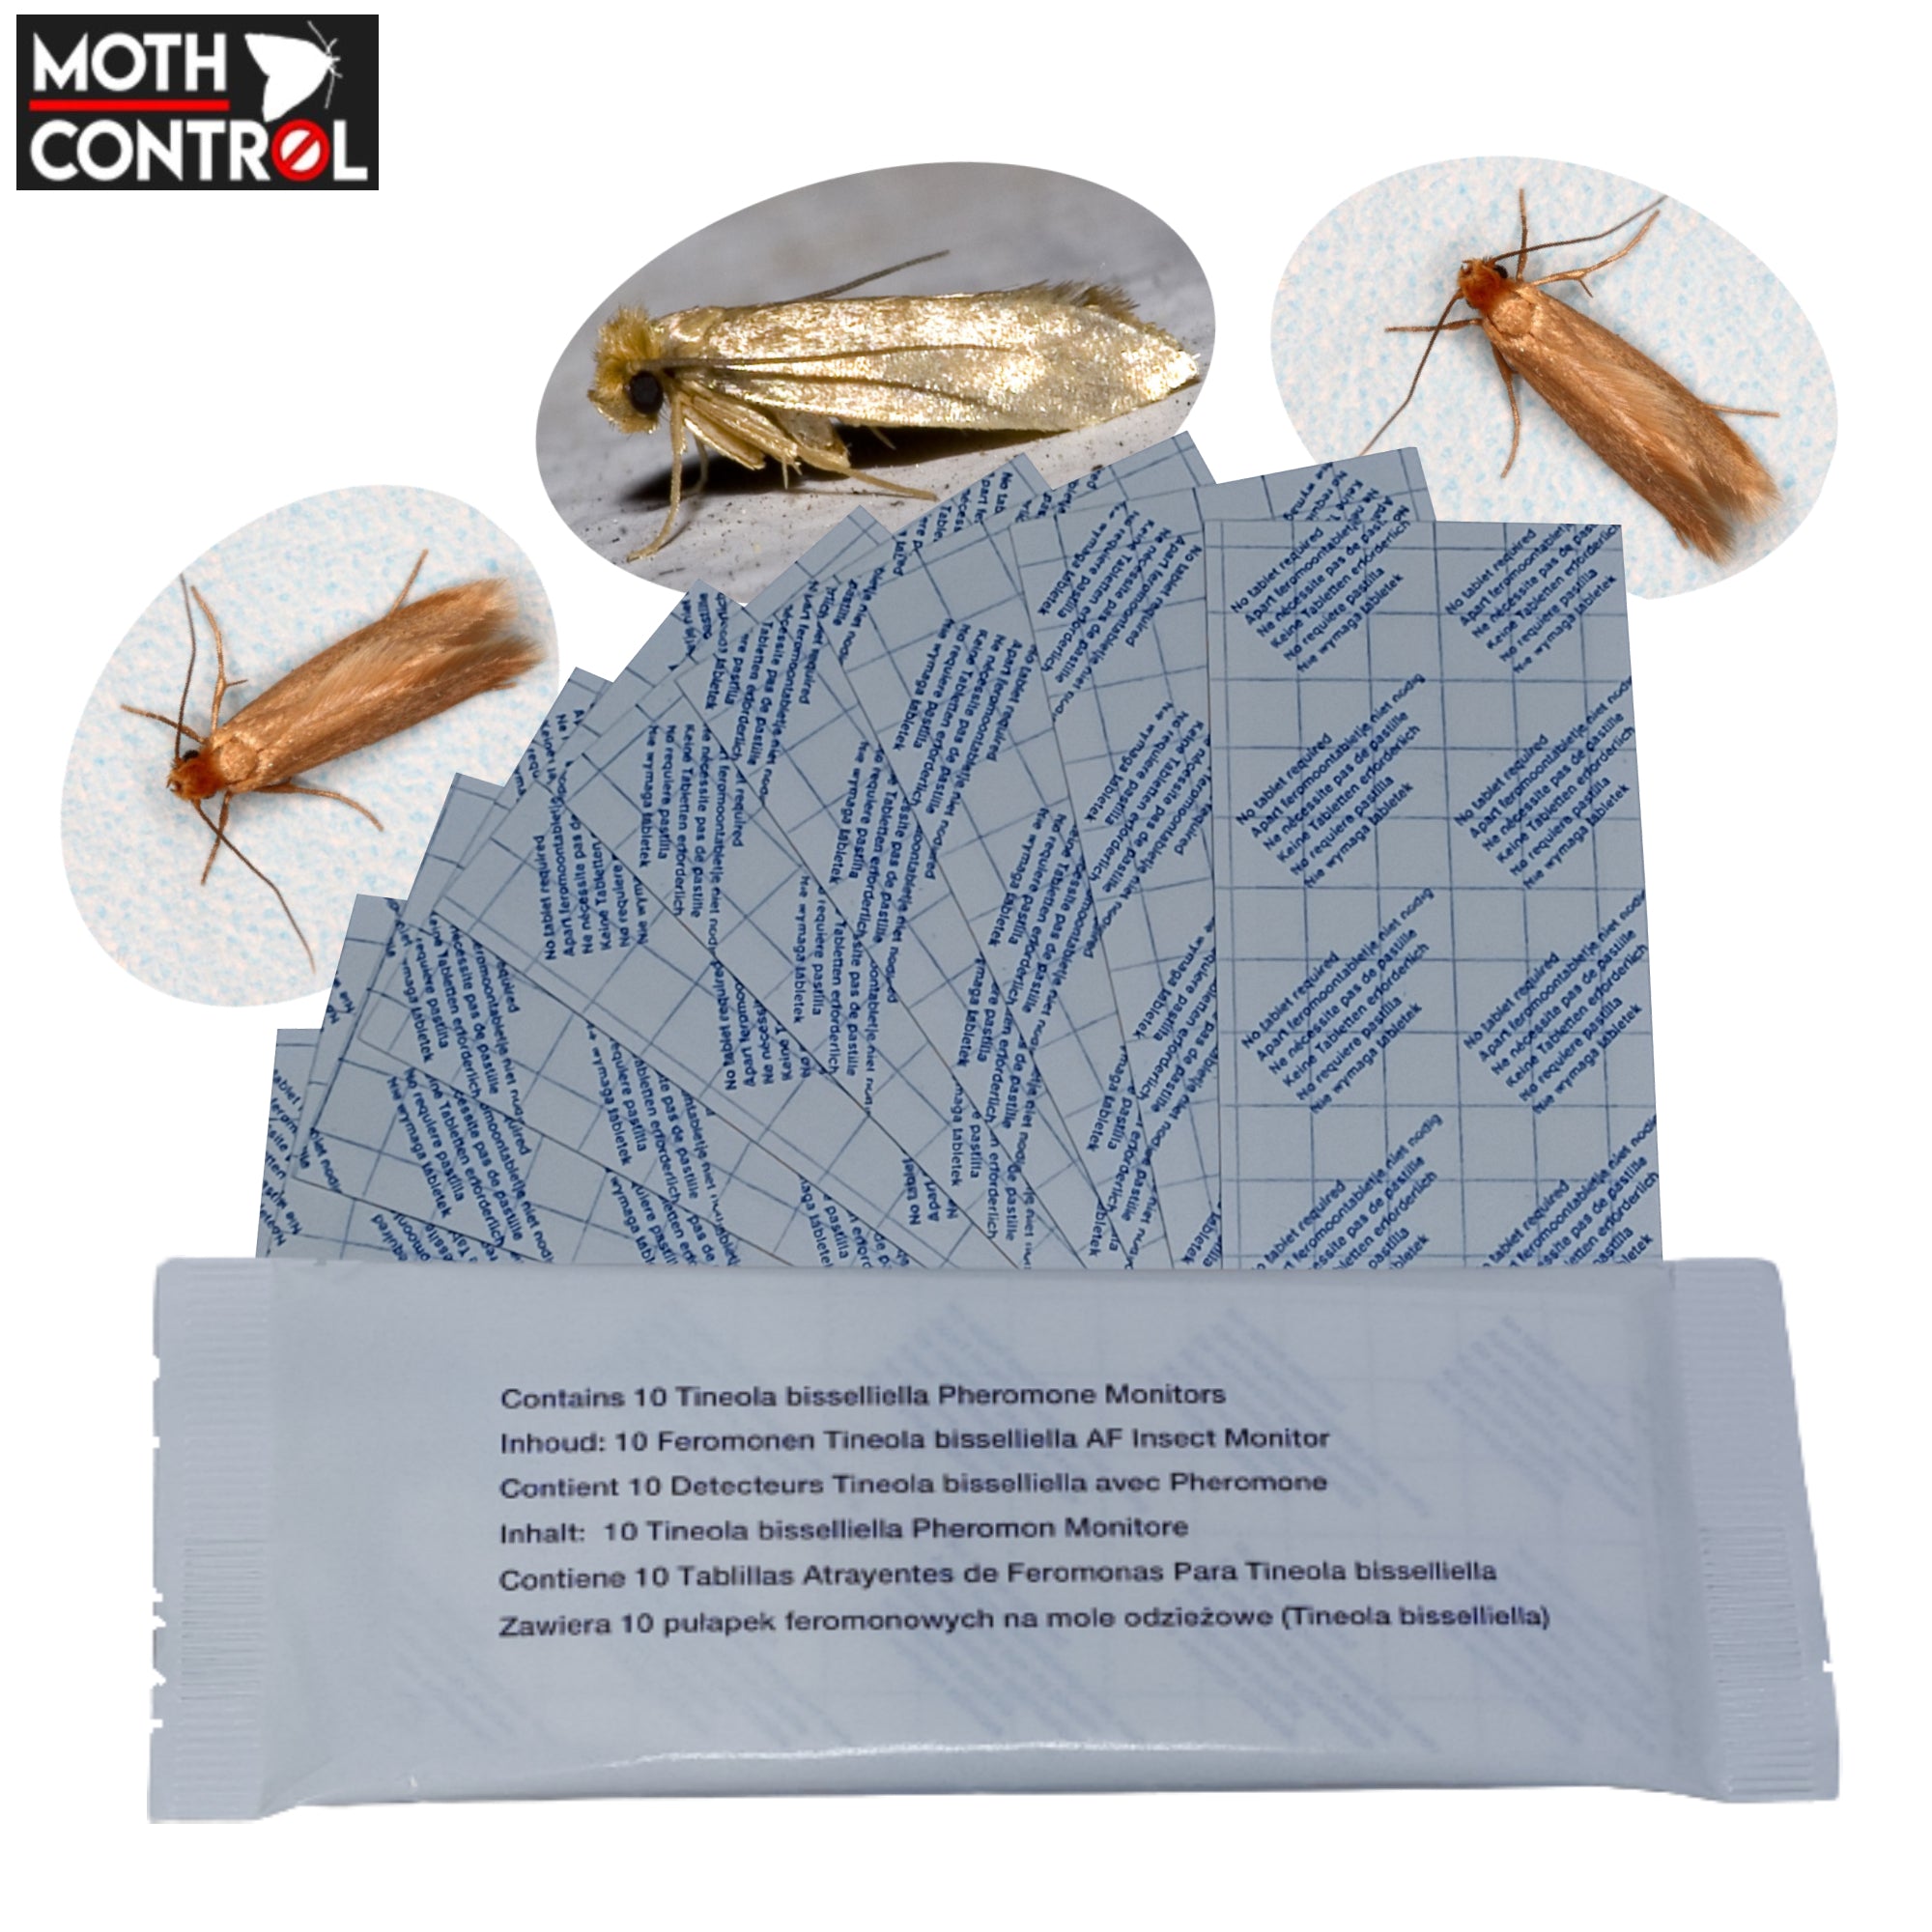 Rentokil Moth Killer Strips - 10 Pack